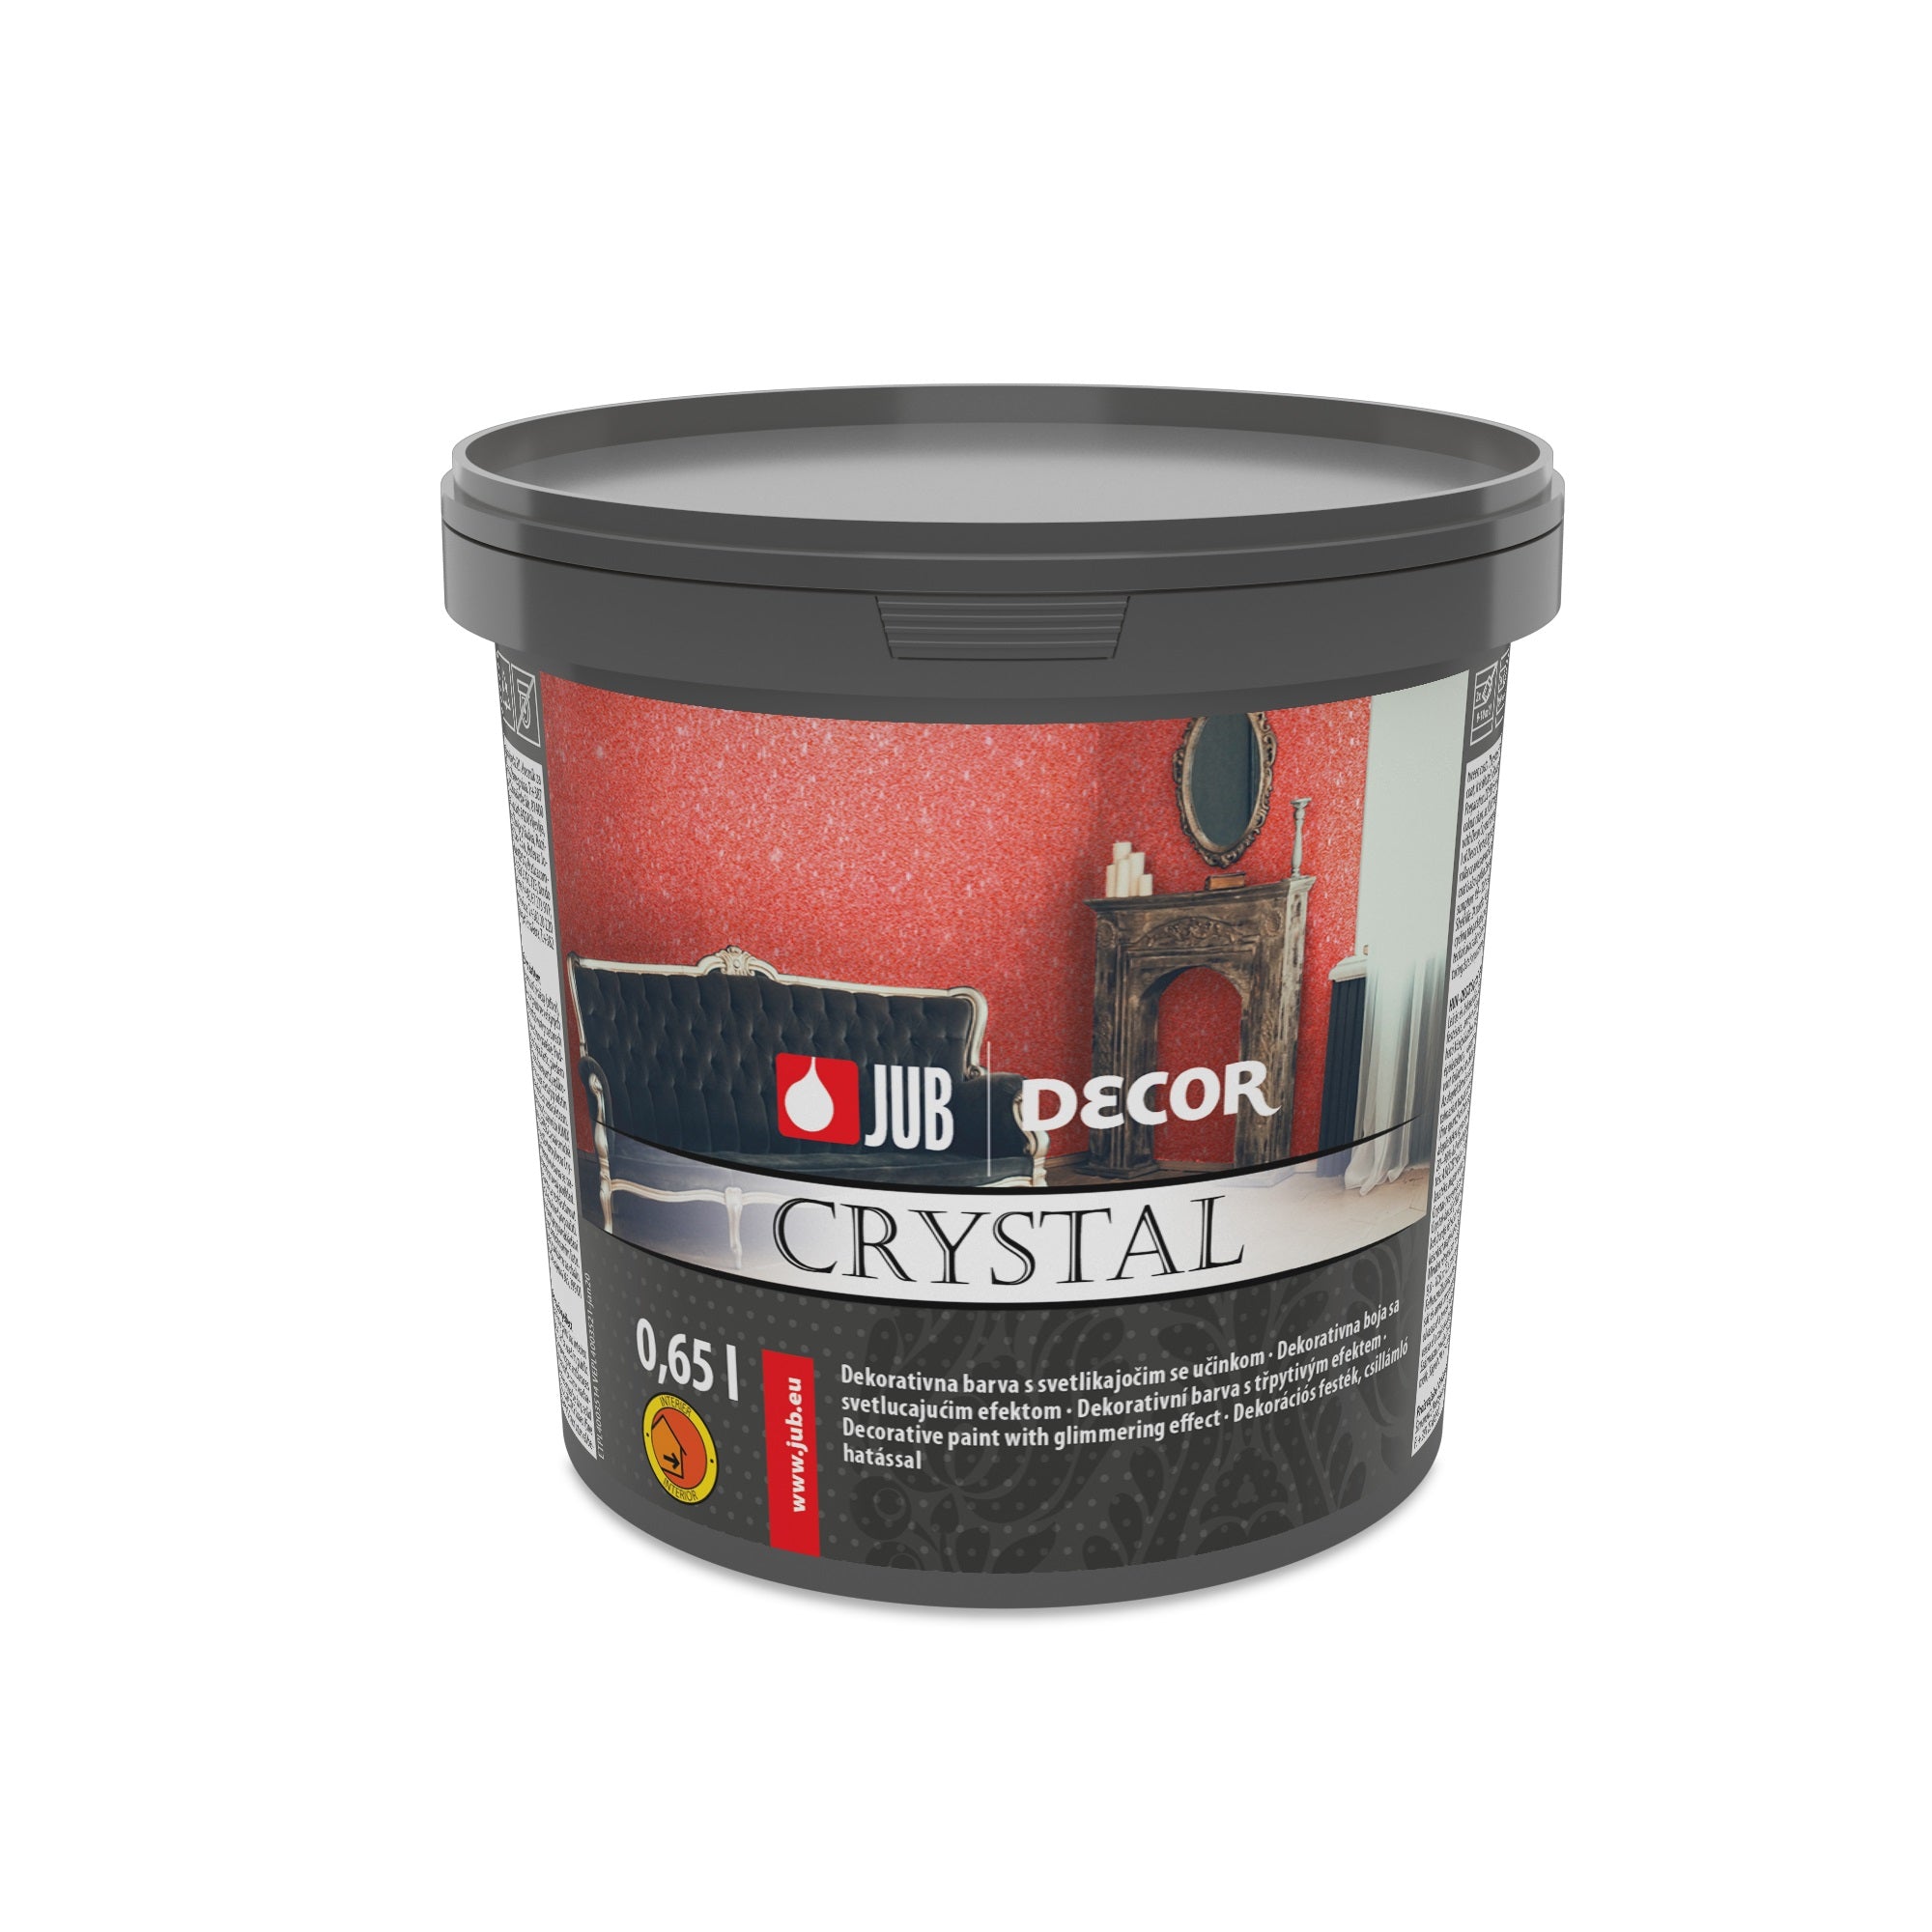 JUB DECOR Crystal Dekoratívna farba s trblietavým efektom 0,65 l